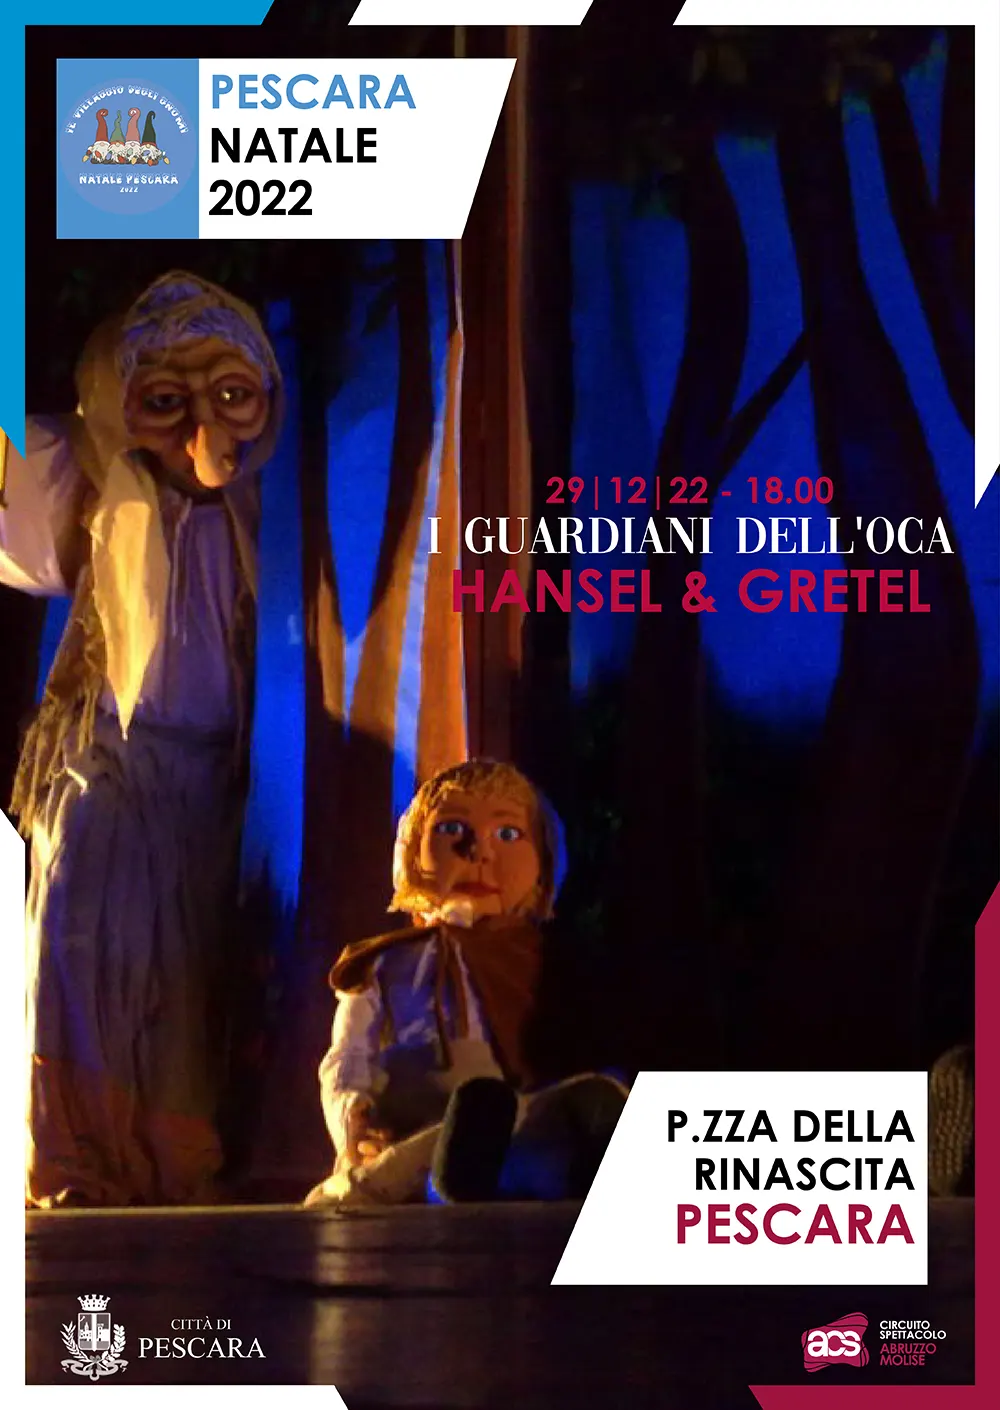 Hansel & Gretel, I guardiani dell'Oca. Pescara il 29 dicembre 2022.